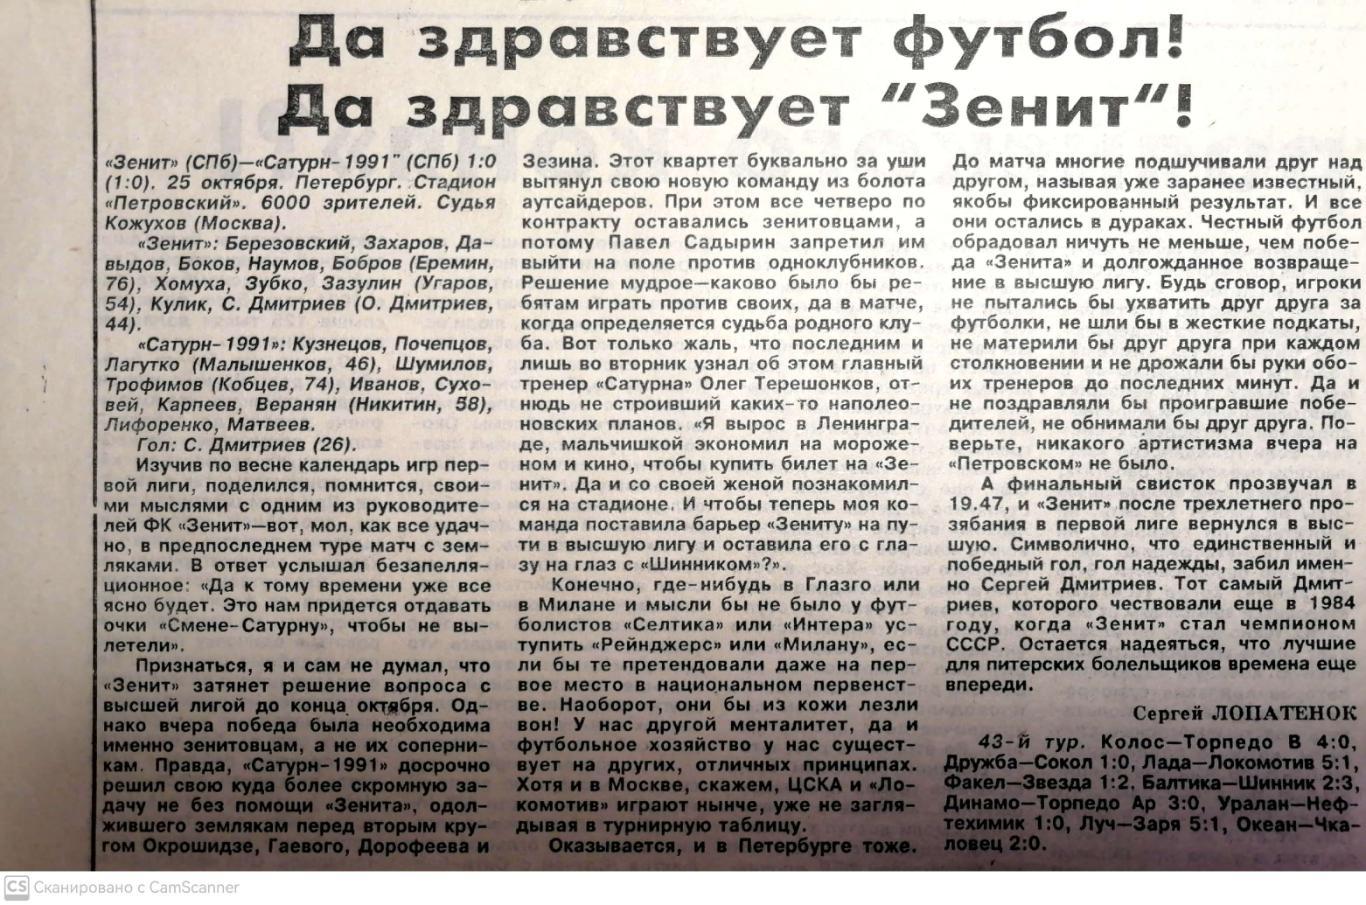 Из газеты Невское время (1995). Зенит - Сатурн-1991 (25.10.1995)